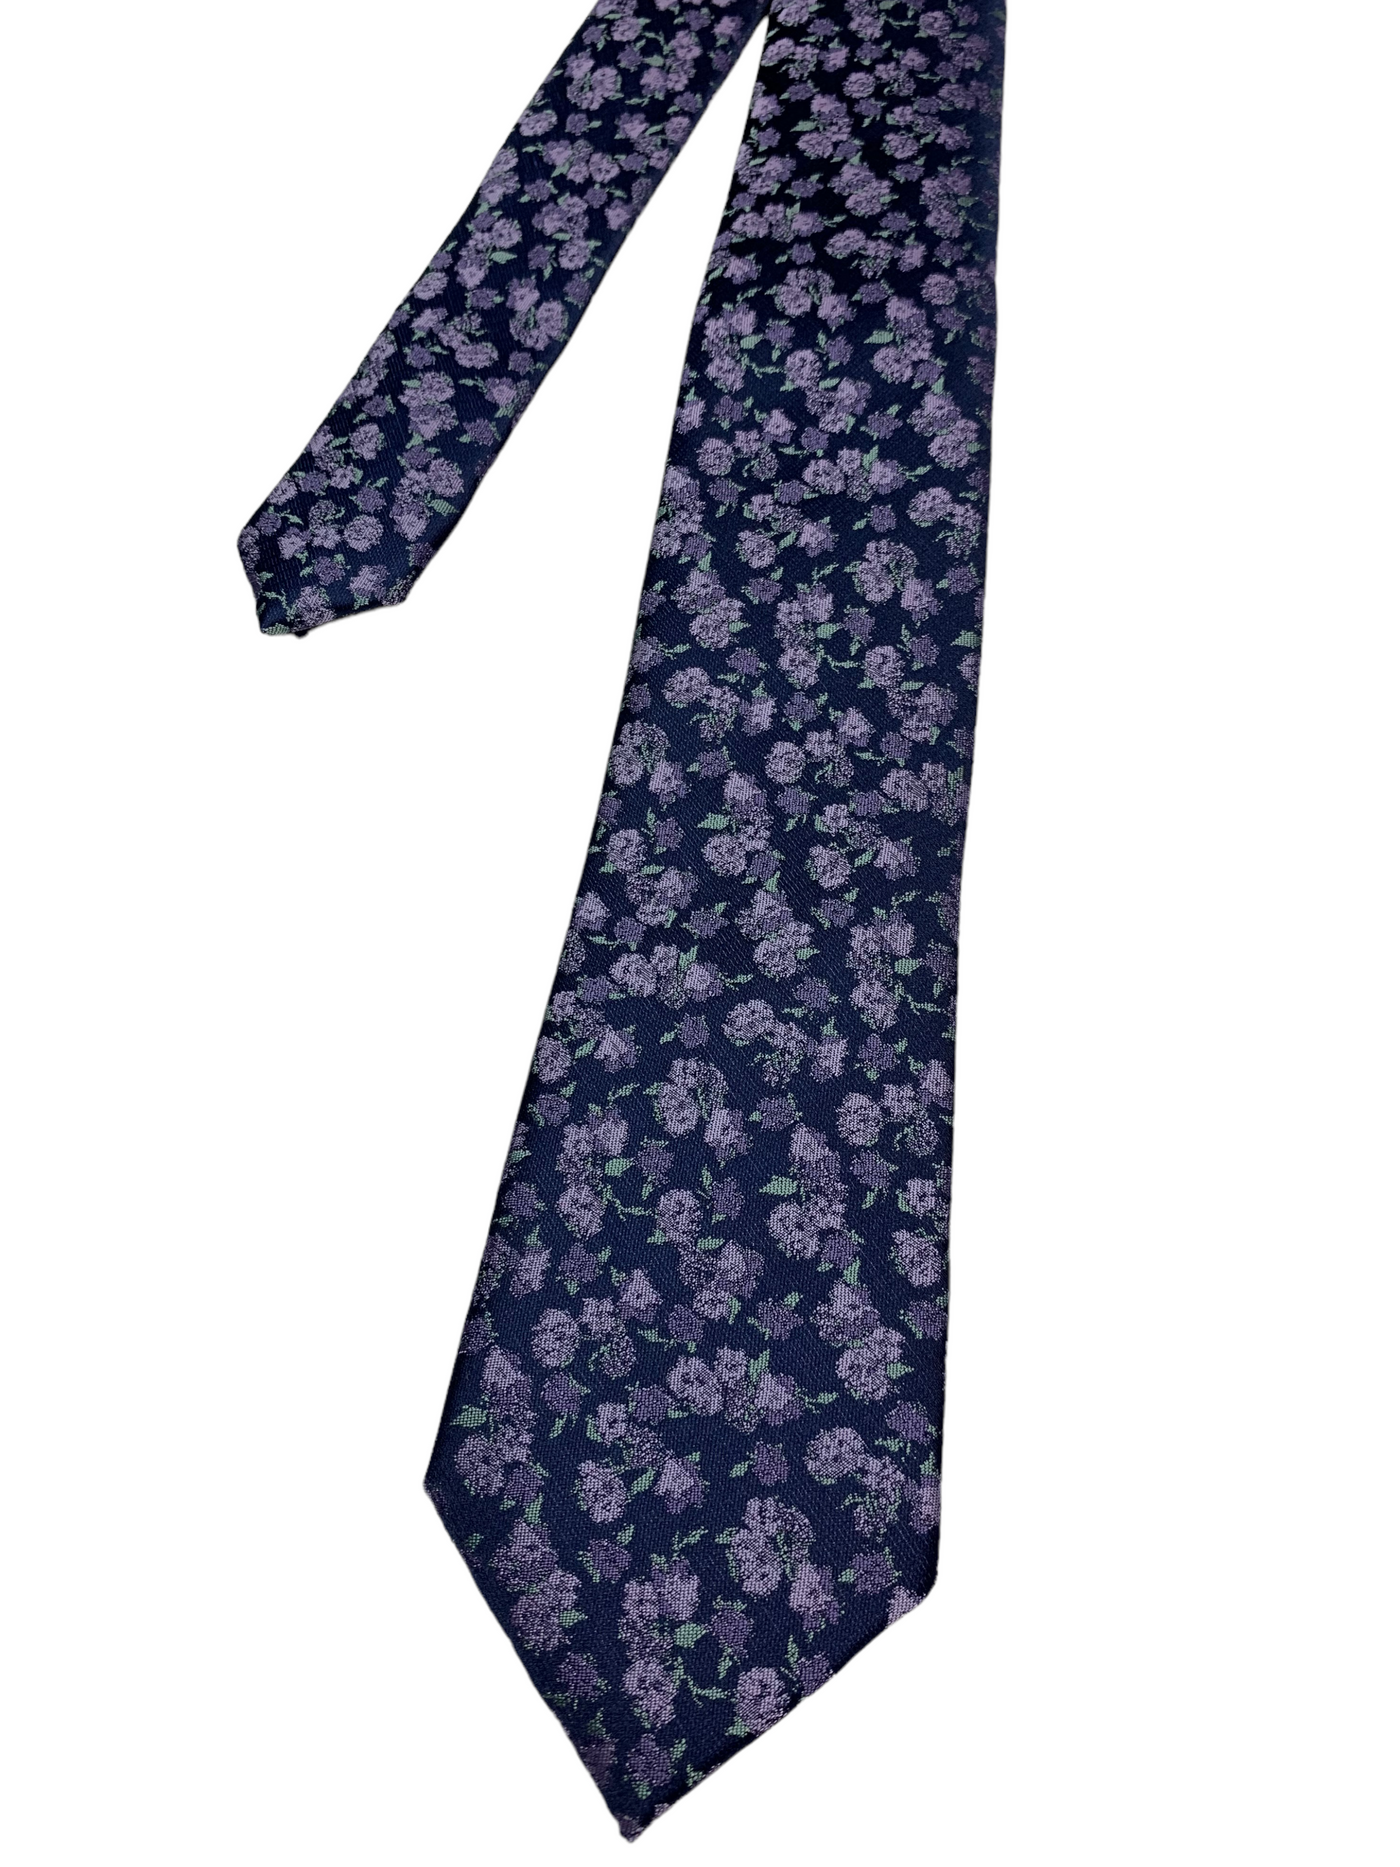 Cravate mauve à motif floral